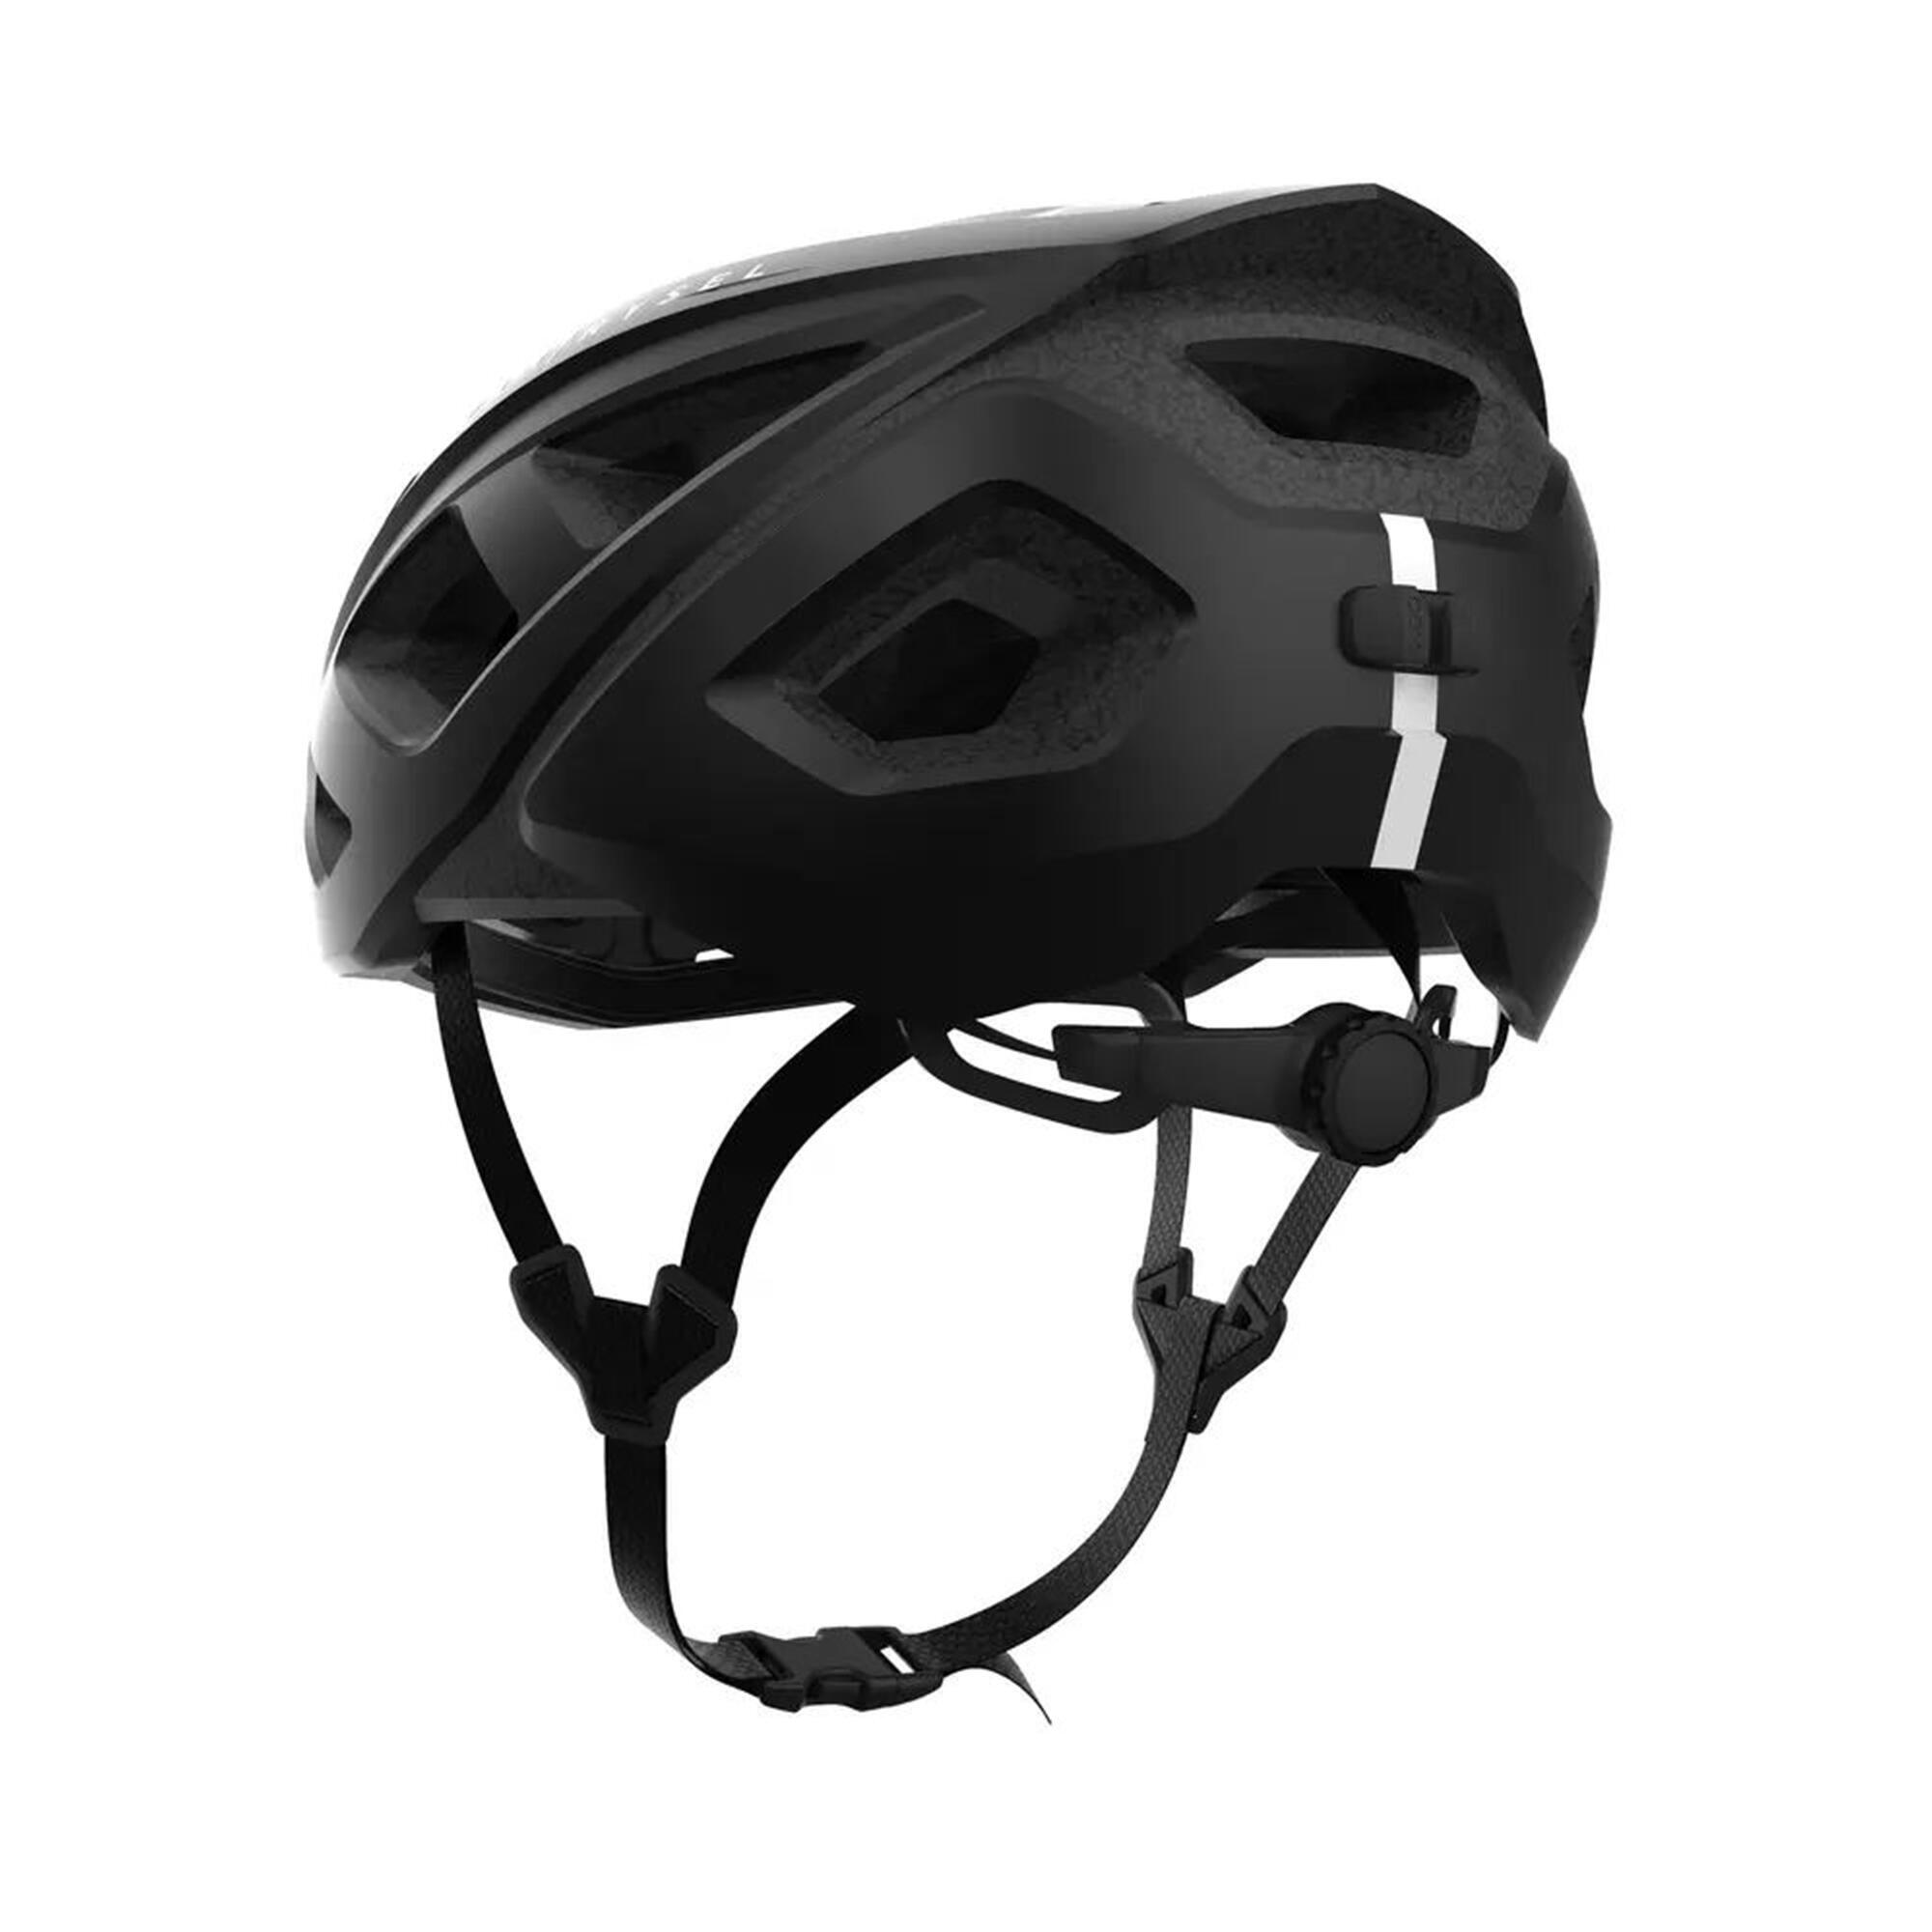 RoadR 500 Road Cycling Helmet - Black 2/6